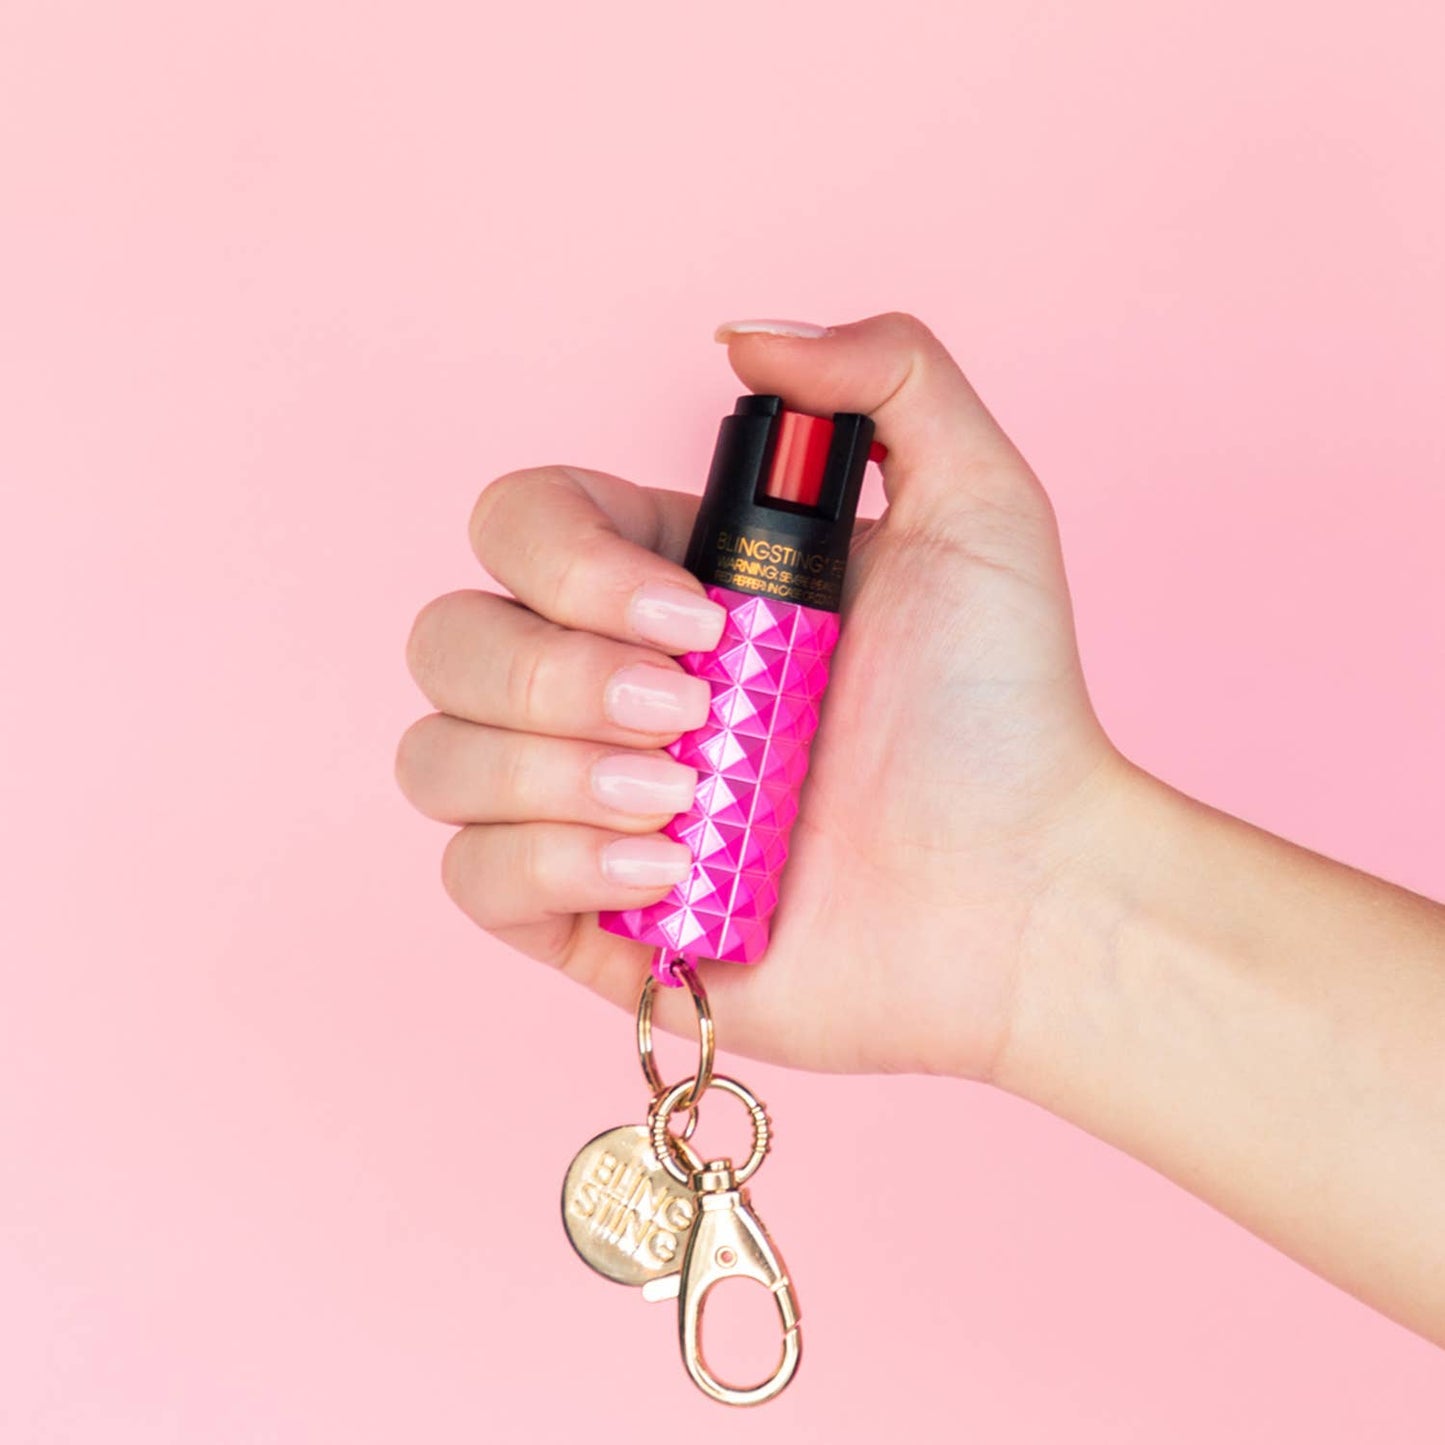 BLINGSTING - Pepper Spray | Metallic Pink Studded